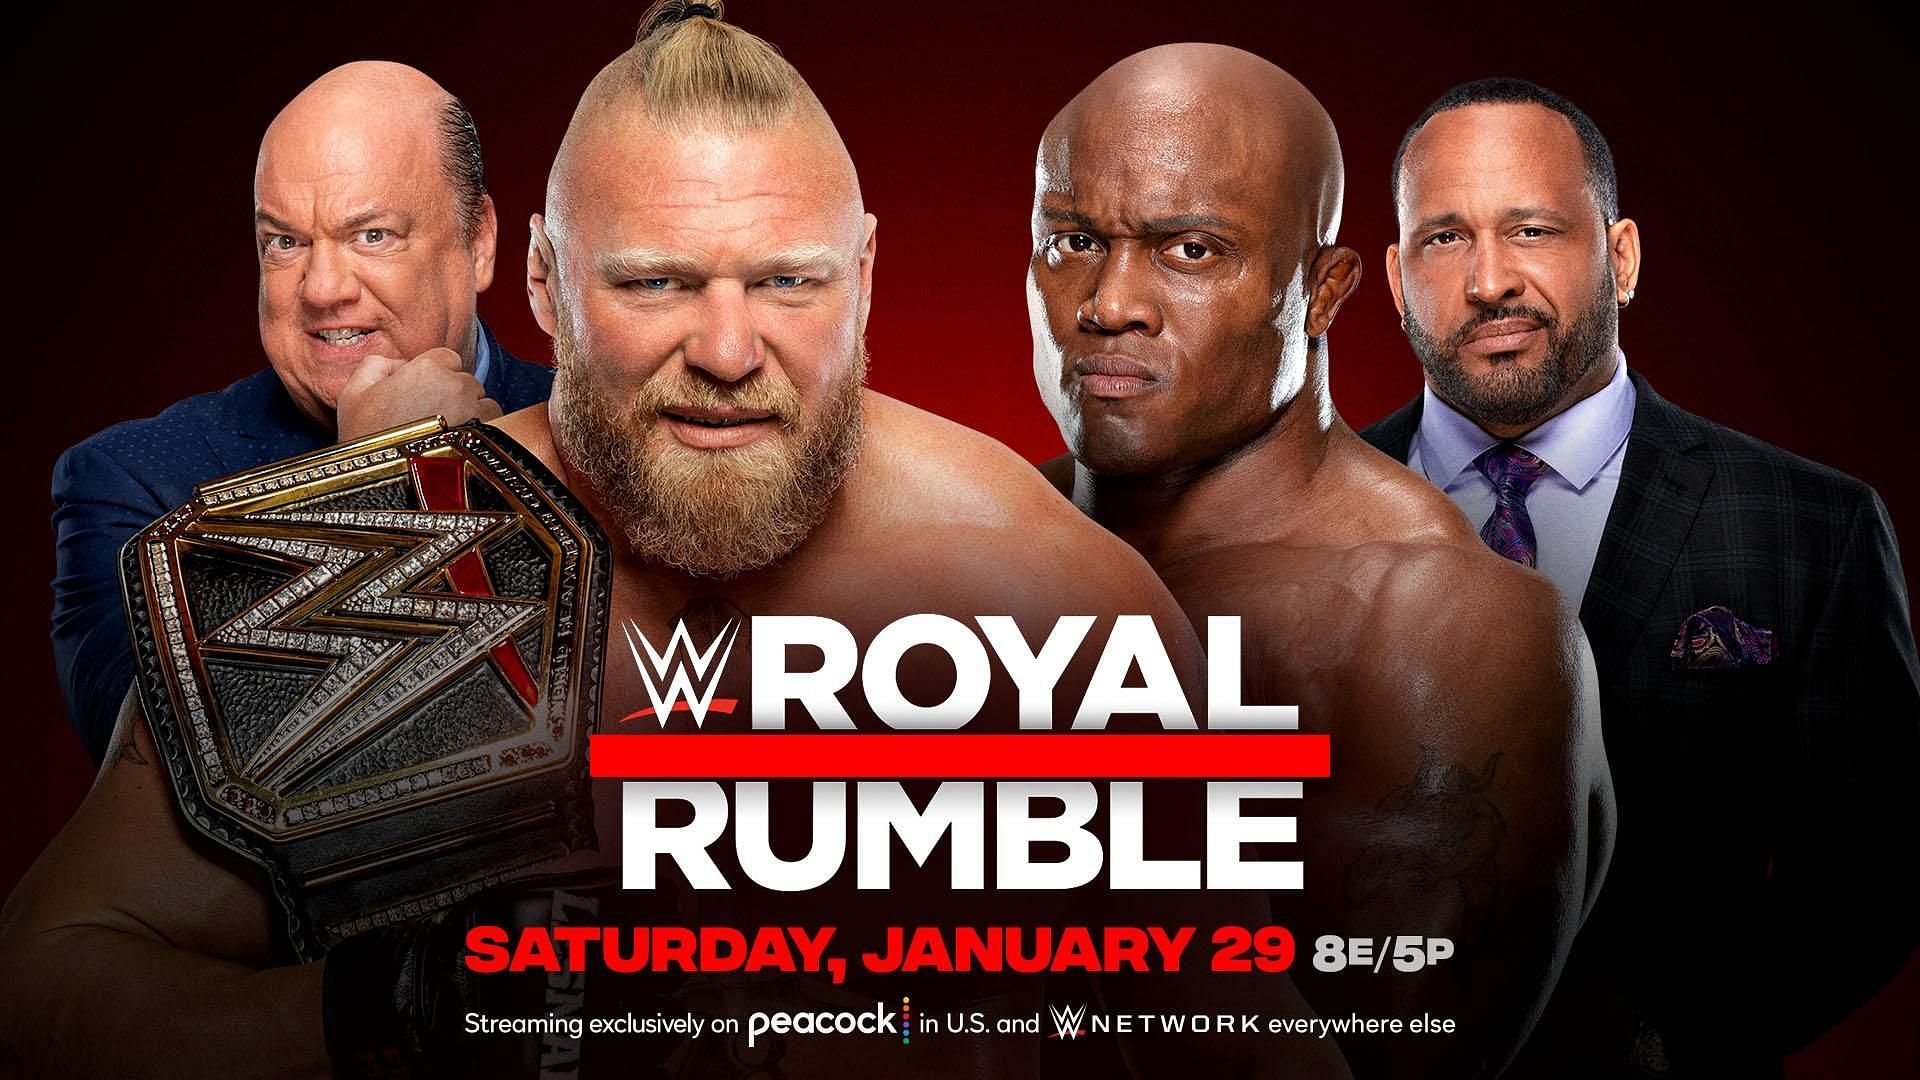 Brock Lesnar vs. Bobby Lashley will take place at WWE Royal Rumble 2022